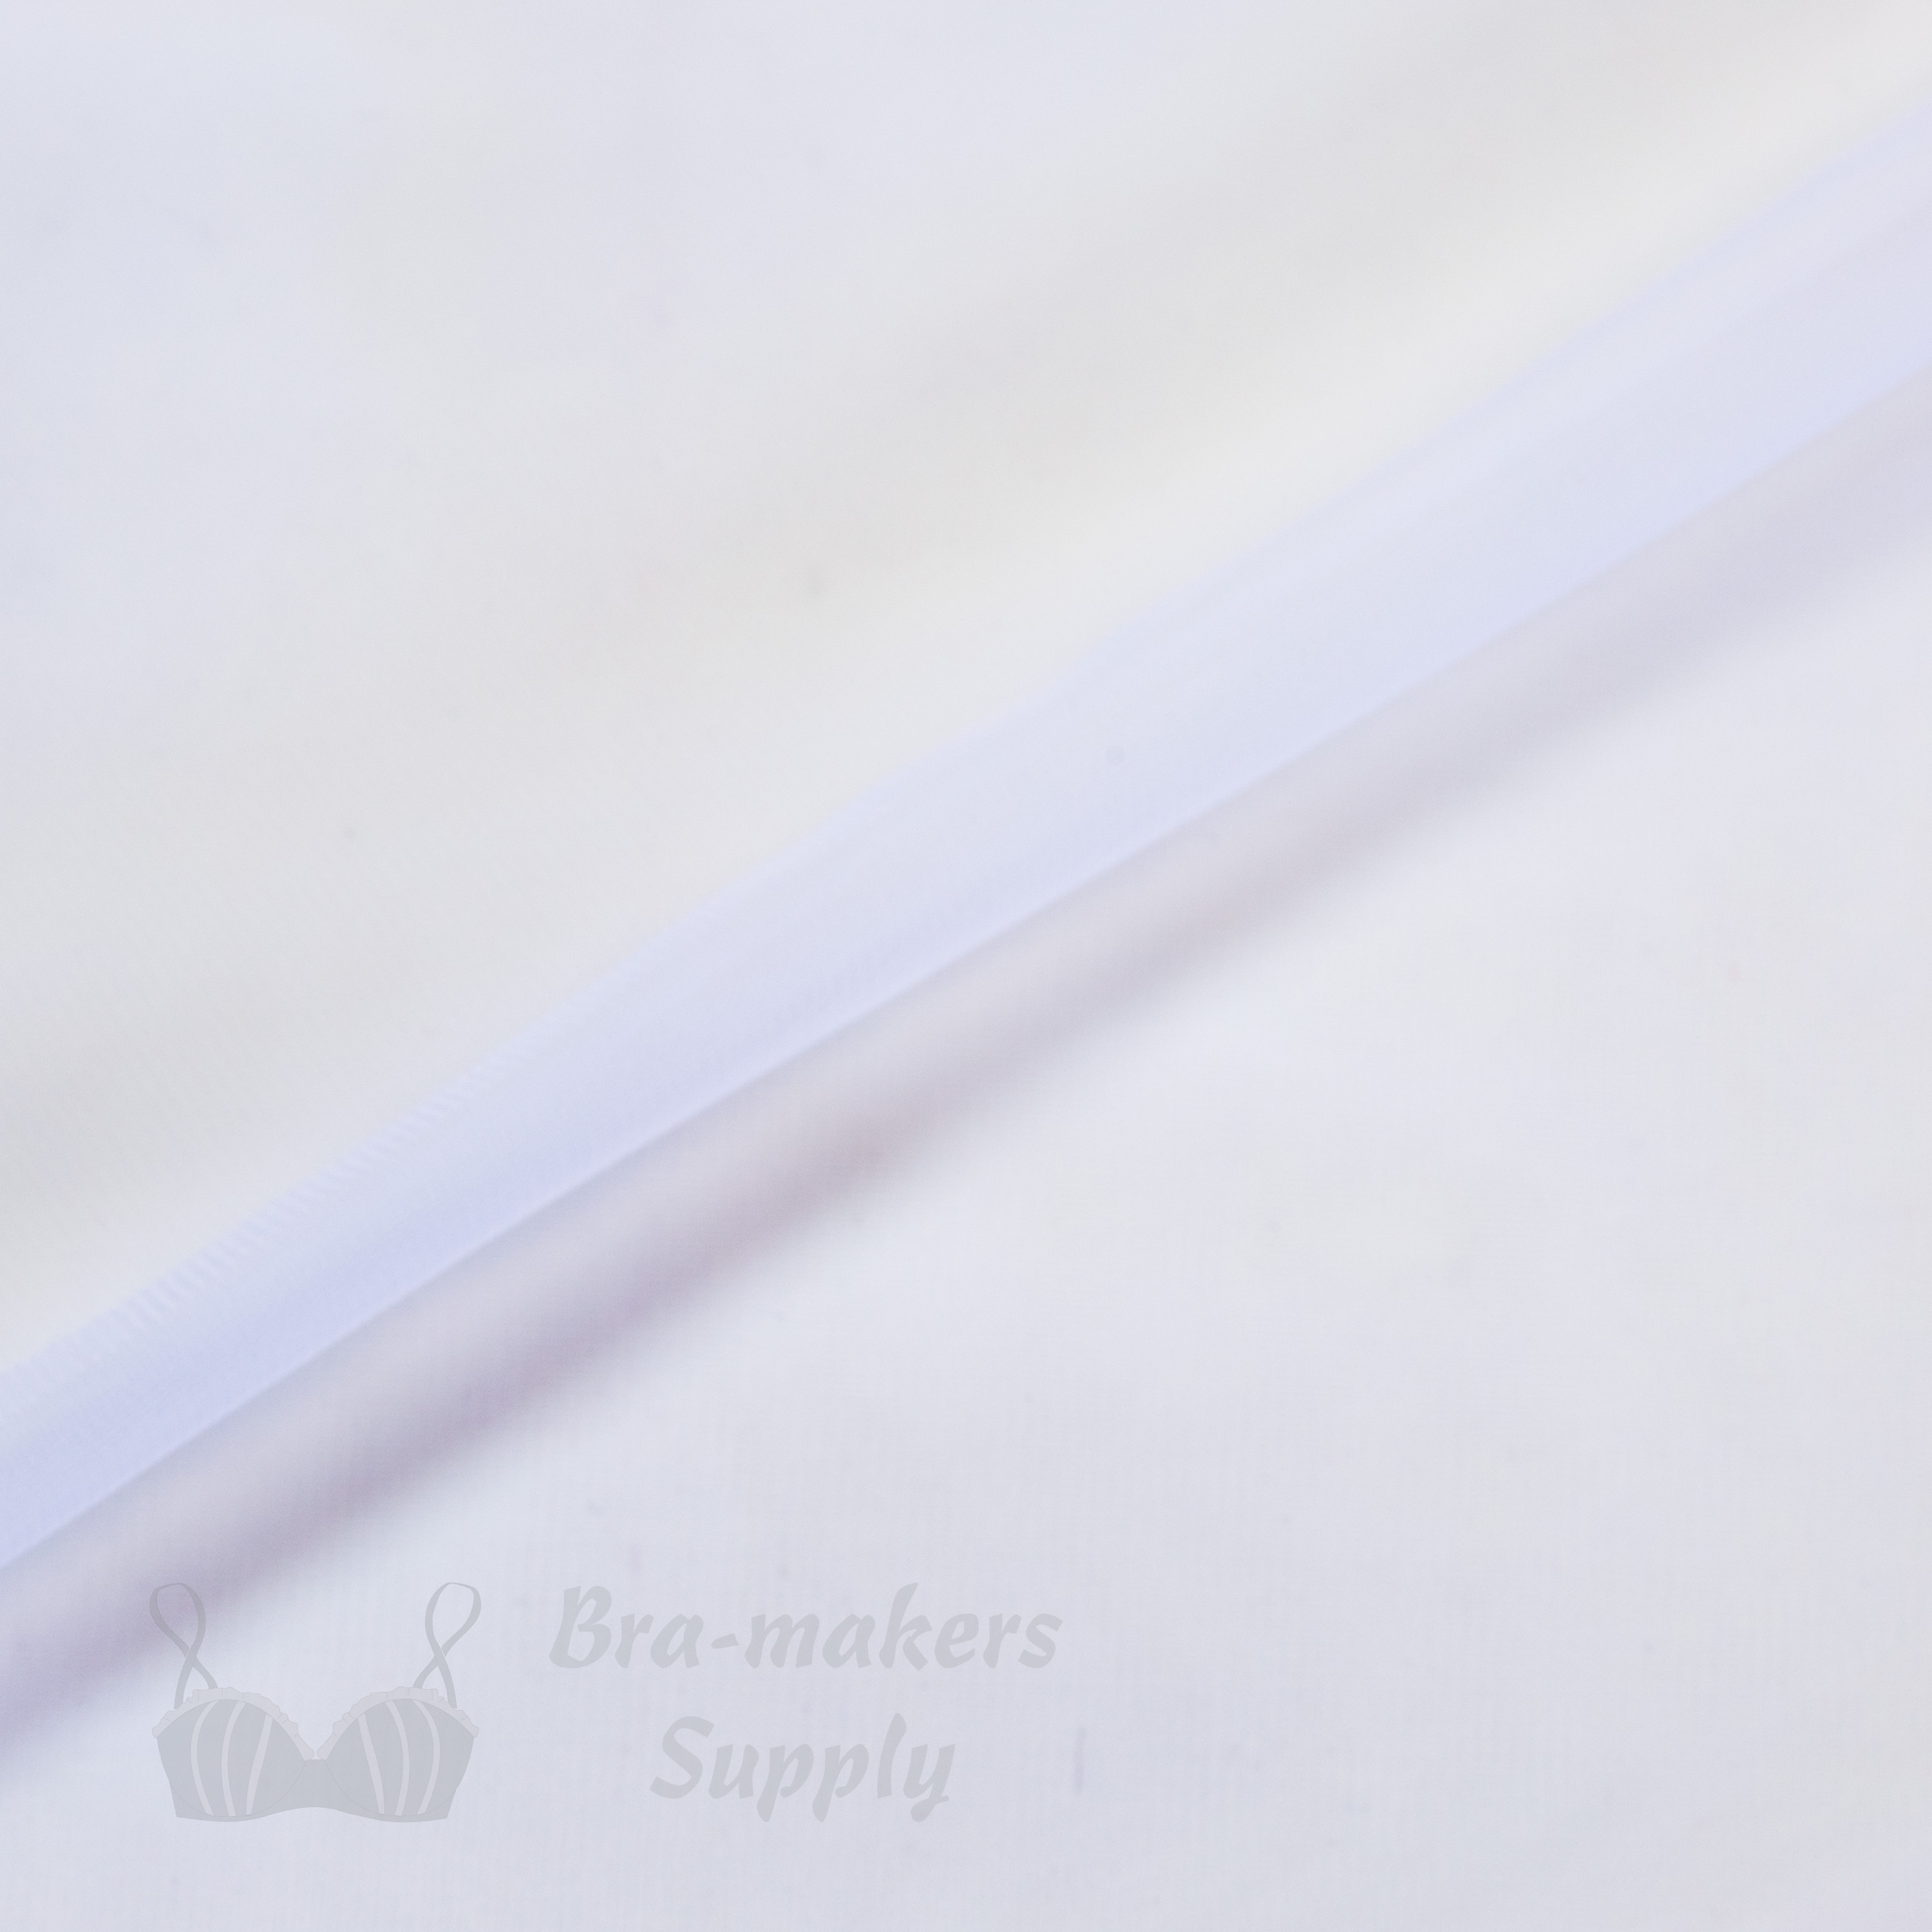 15 denier sheer nylon fabric FL-15 white from Bra-Makers Supply folded shown